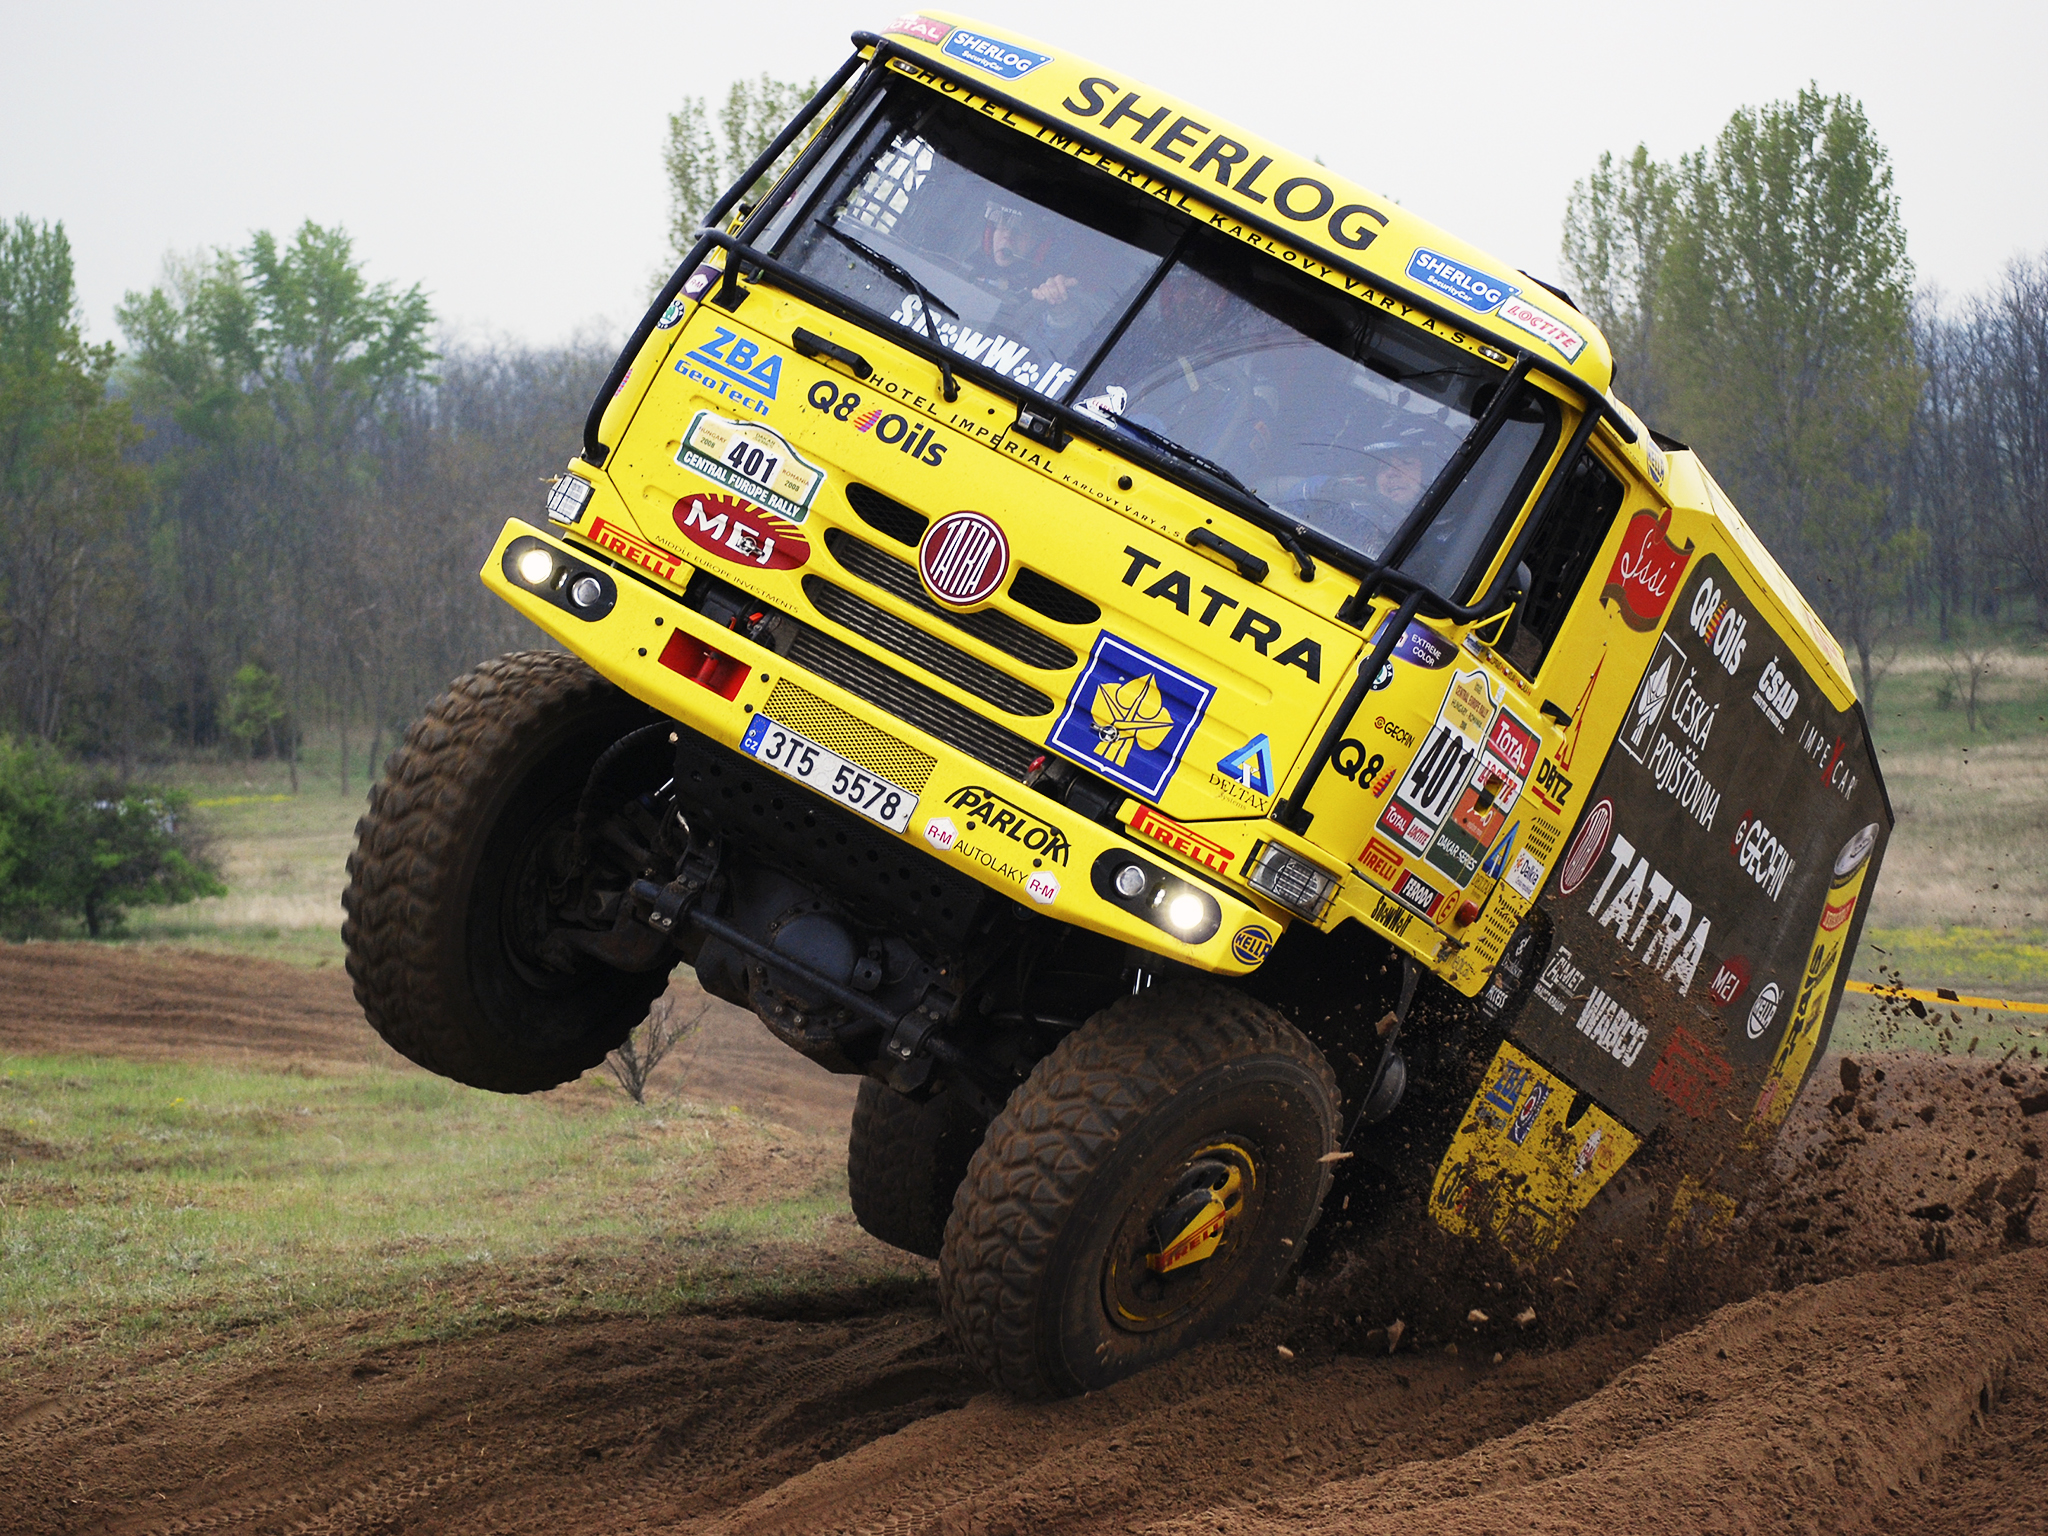 2009, Tatra, T815, 4x4, Rally, Truck, Offroad, Race, Racing Wallpaper